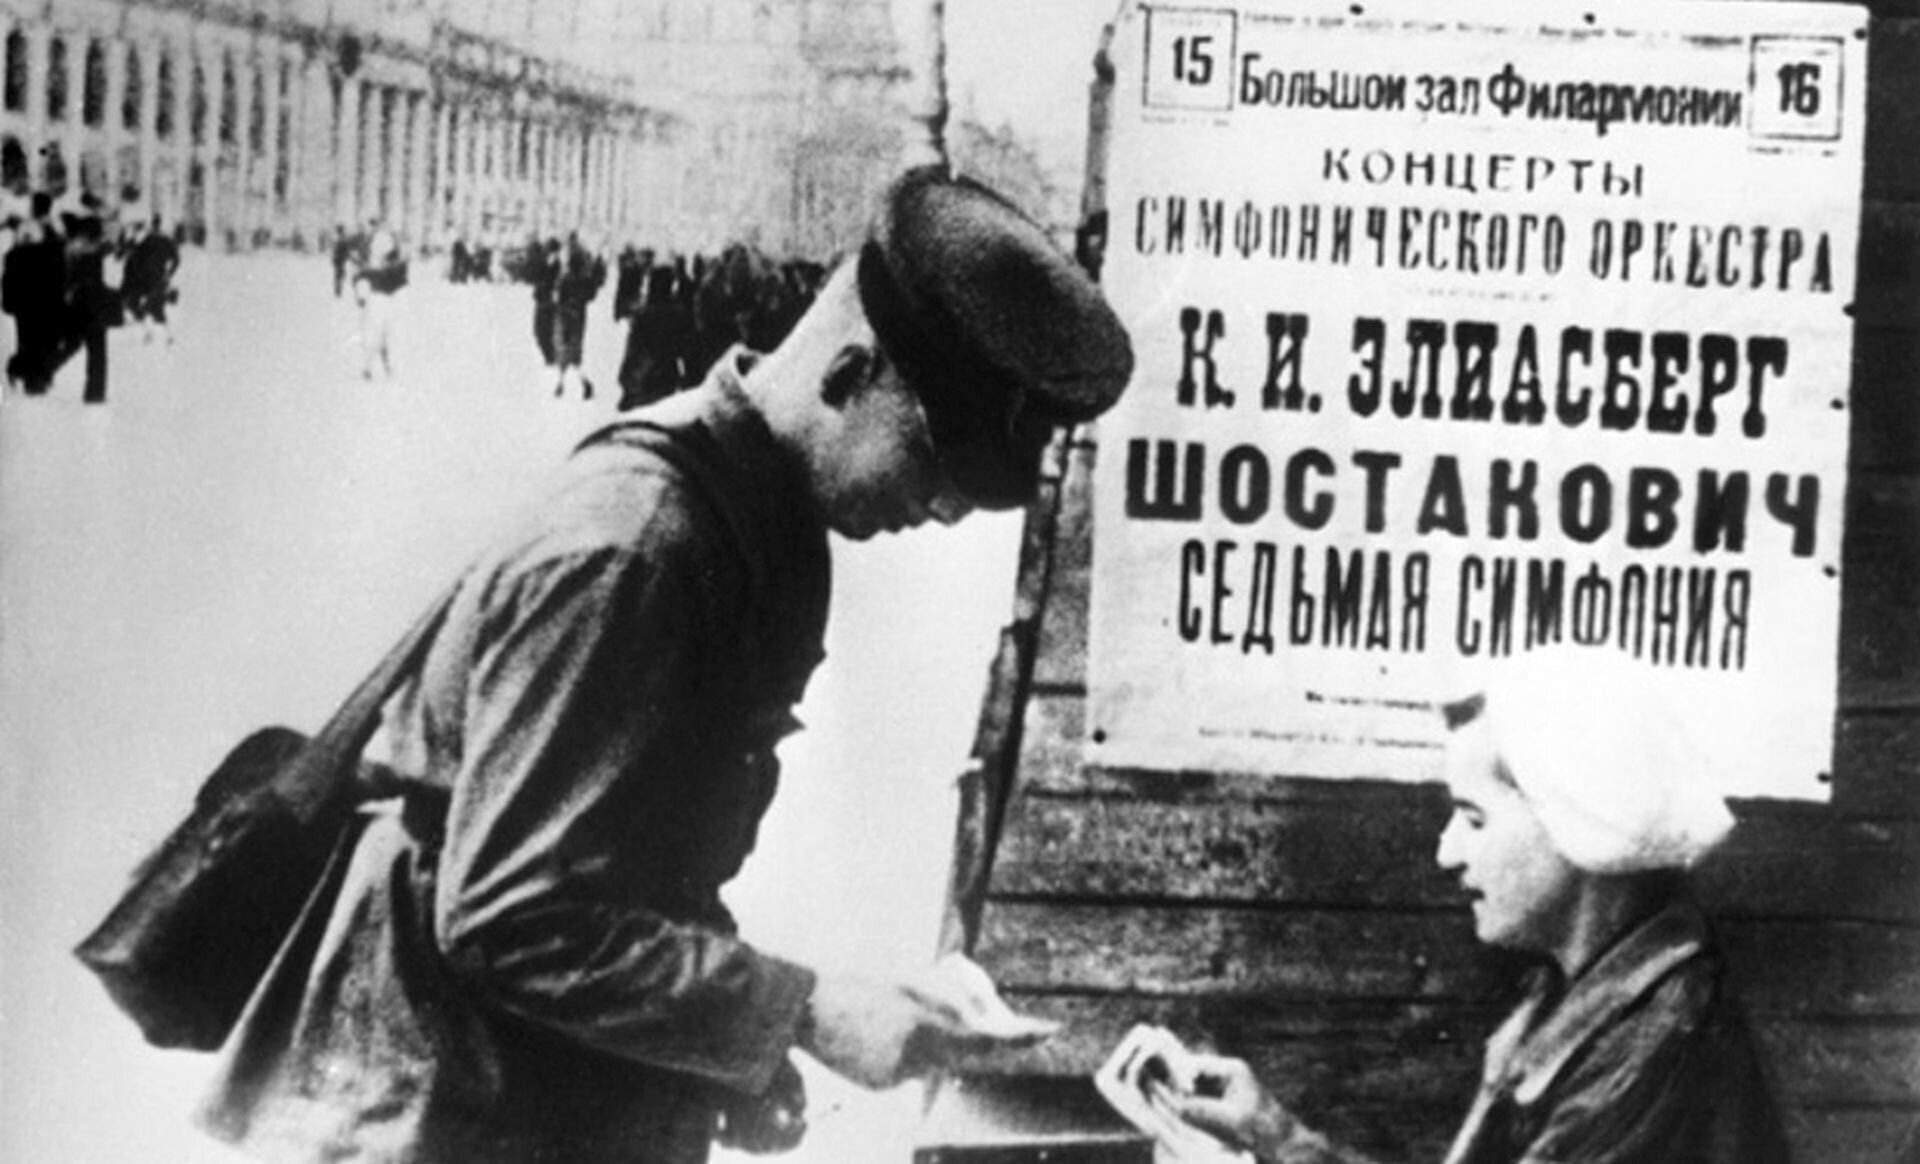 Ilustracja czarno-biała, która przedstawia sowieckiego żołnierza, który kupuje bilet na koncert. Na drugim planie znajduje się plakat zapisany po rosyjsku.